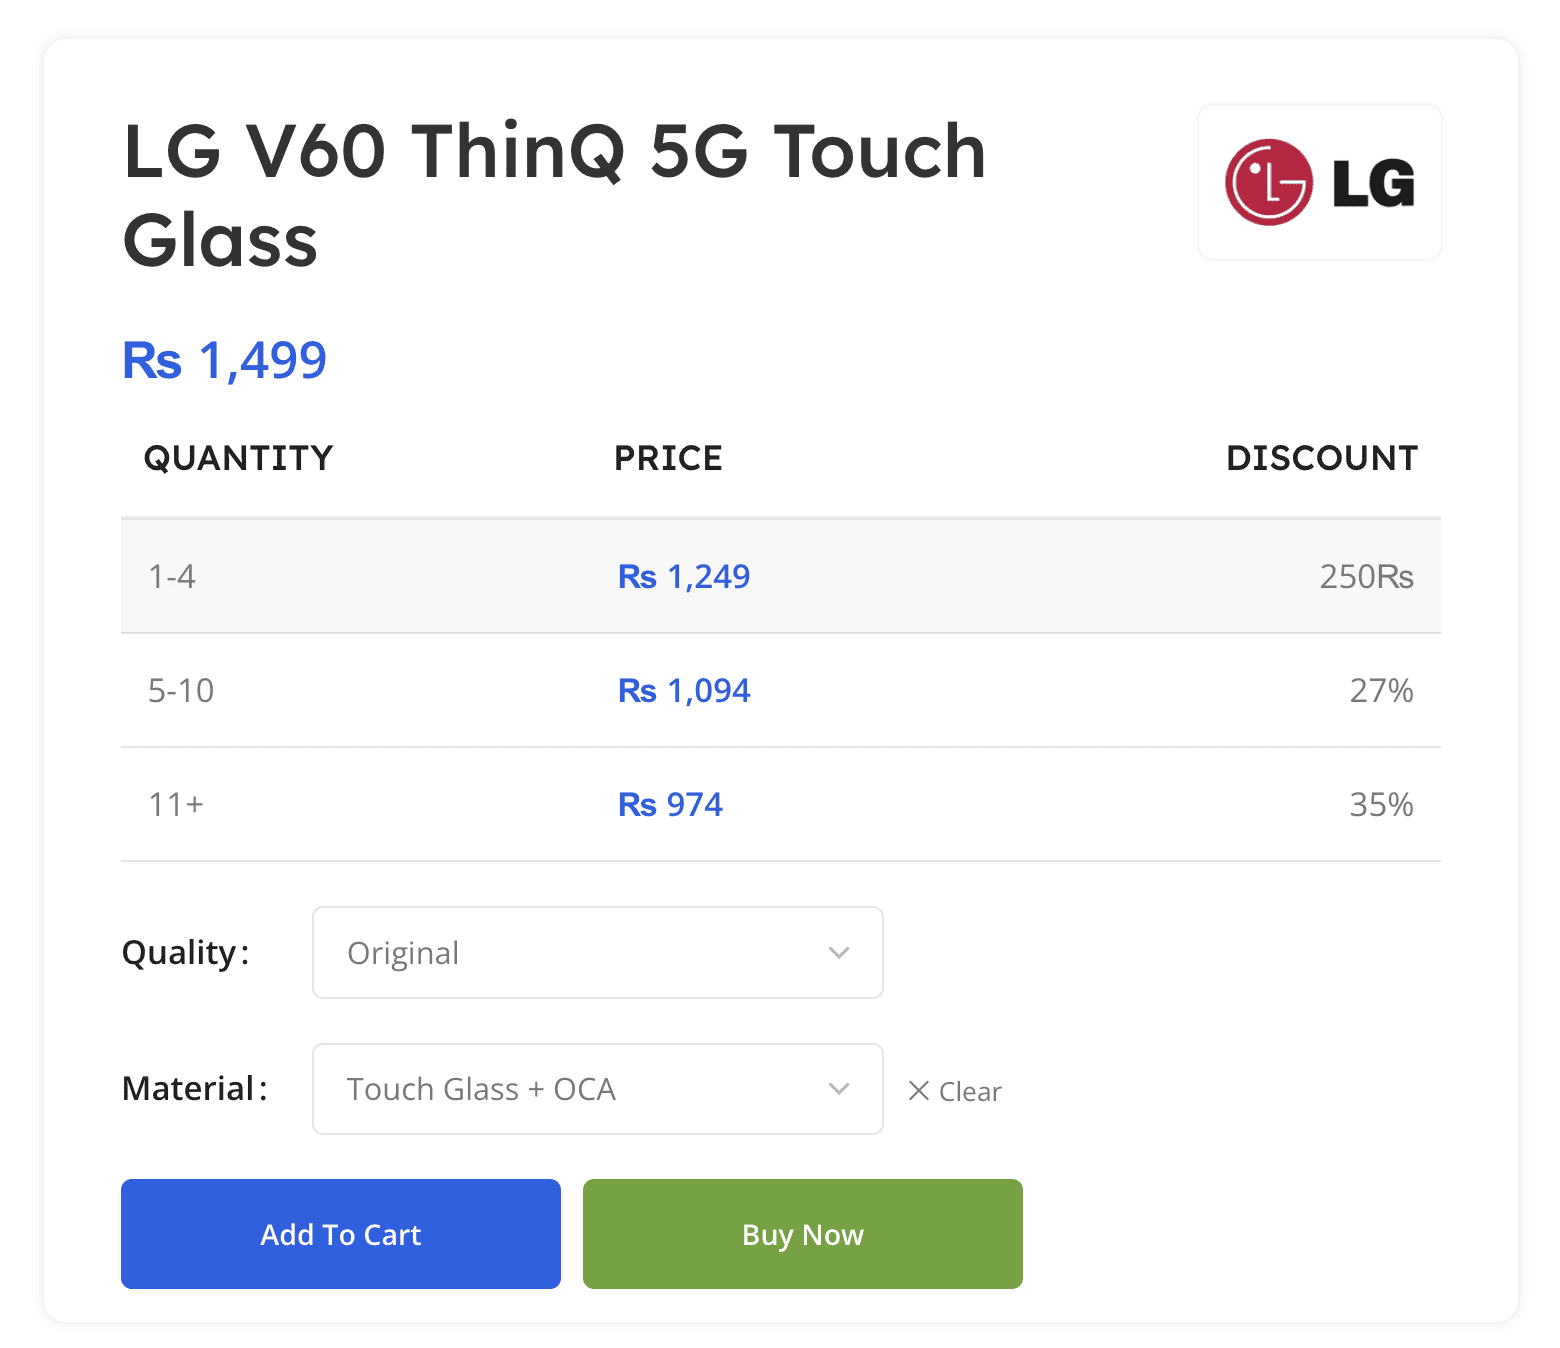 LG V60 Touch OCA Glass Discount